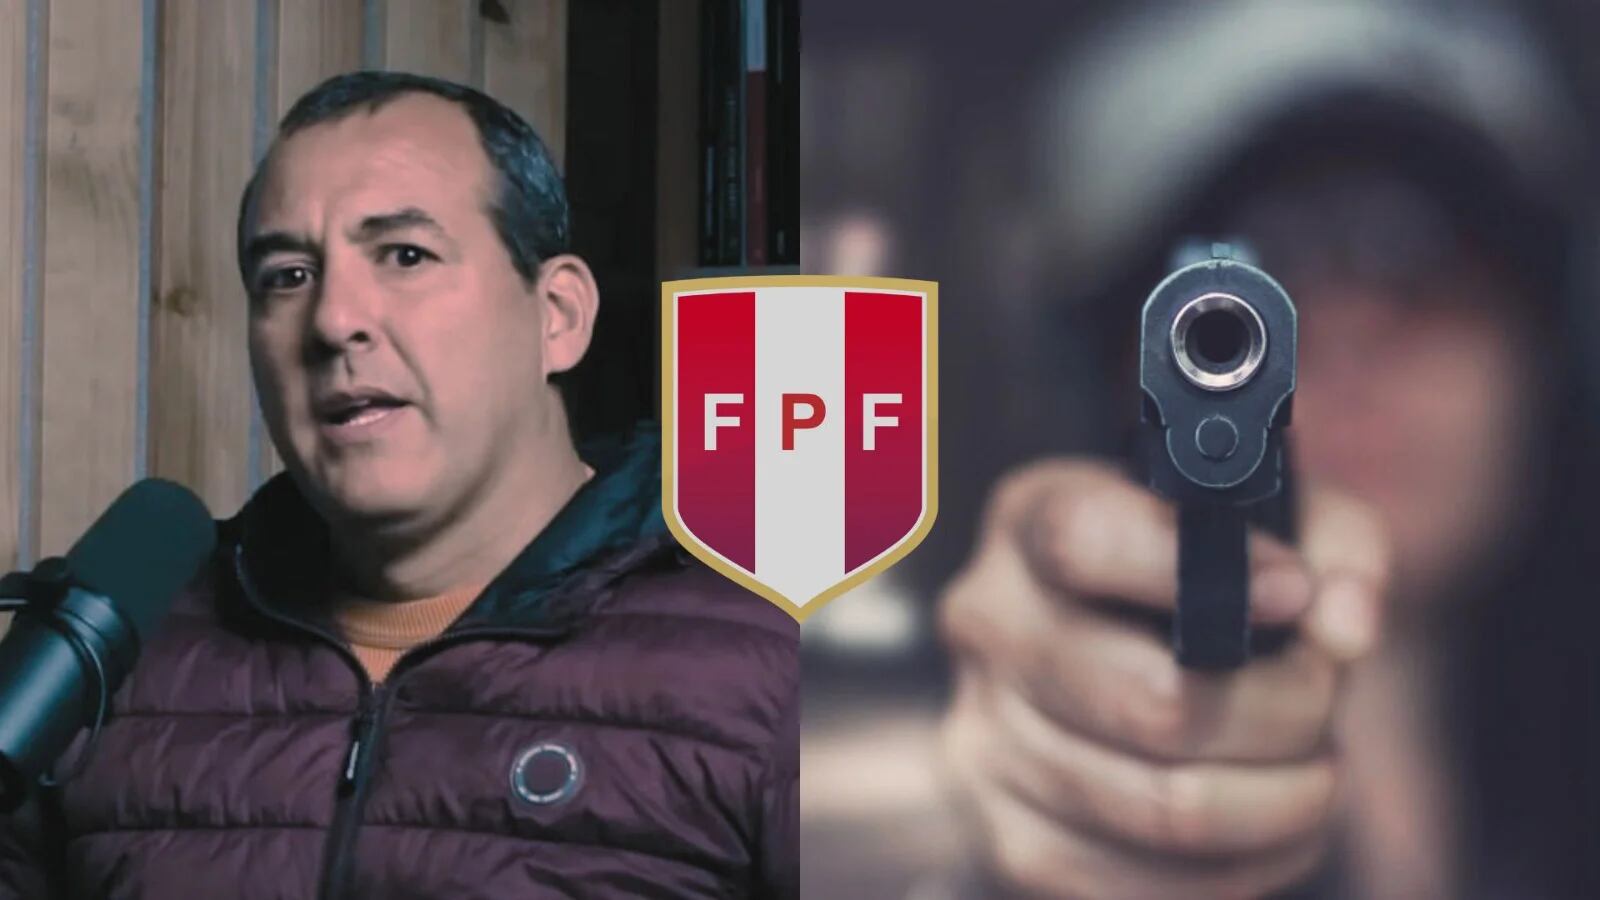 Roberto Silva, presidente de Agremiación, confesó que club amenazó a jugador con un arma para amañar un partido del fútbol peruano